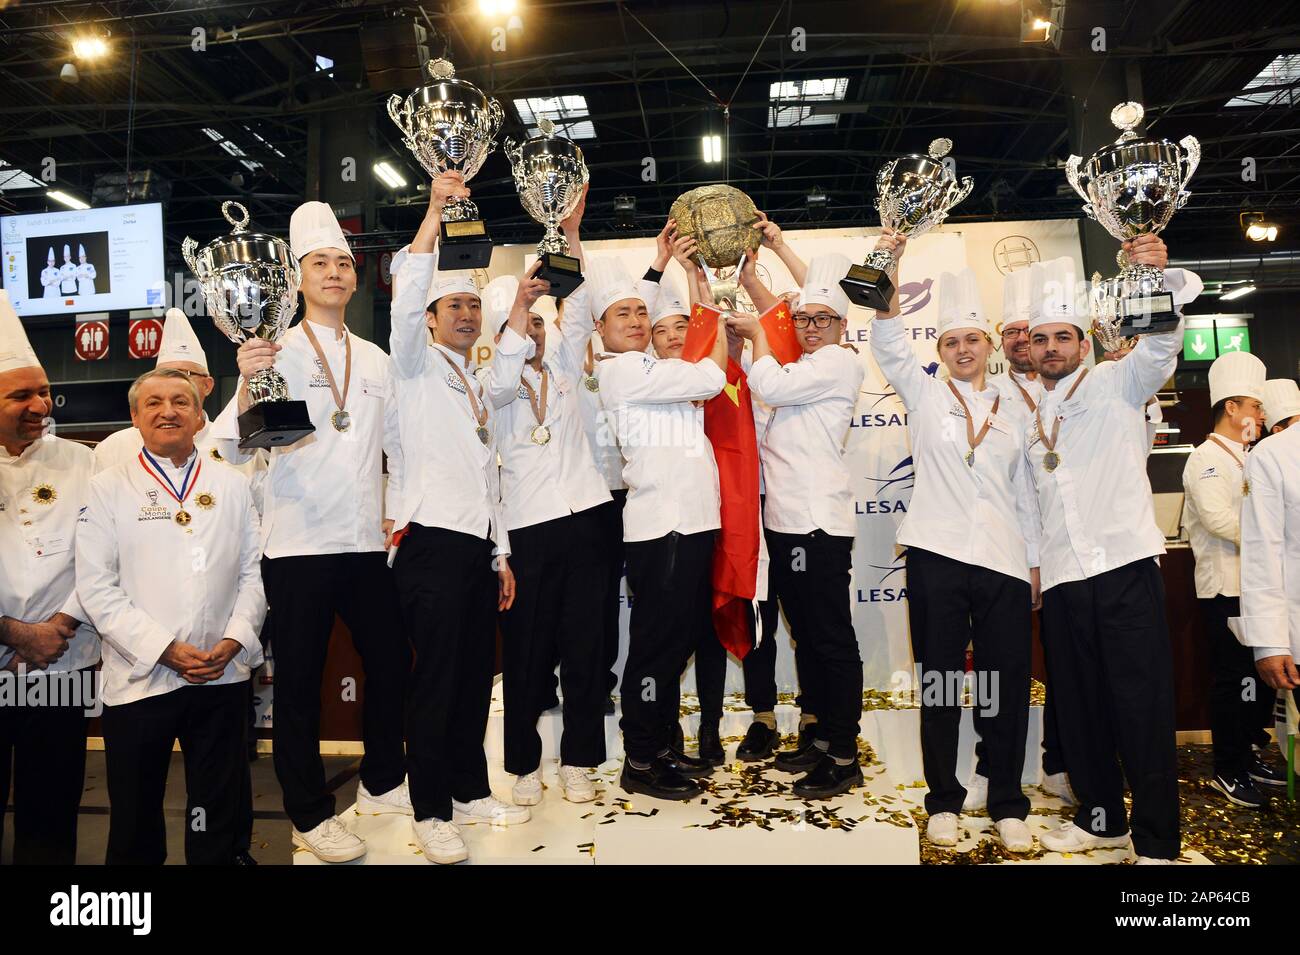 Chine wons la Coupe du Monde 2020 à Paris Boulangerie - EUROPAIN salon international - 14 janvier 2020 Banque D'Images